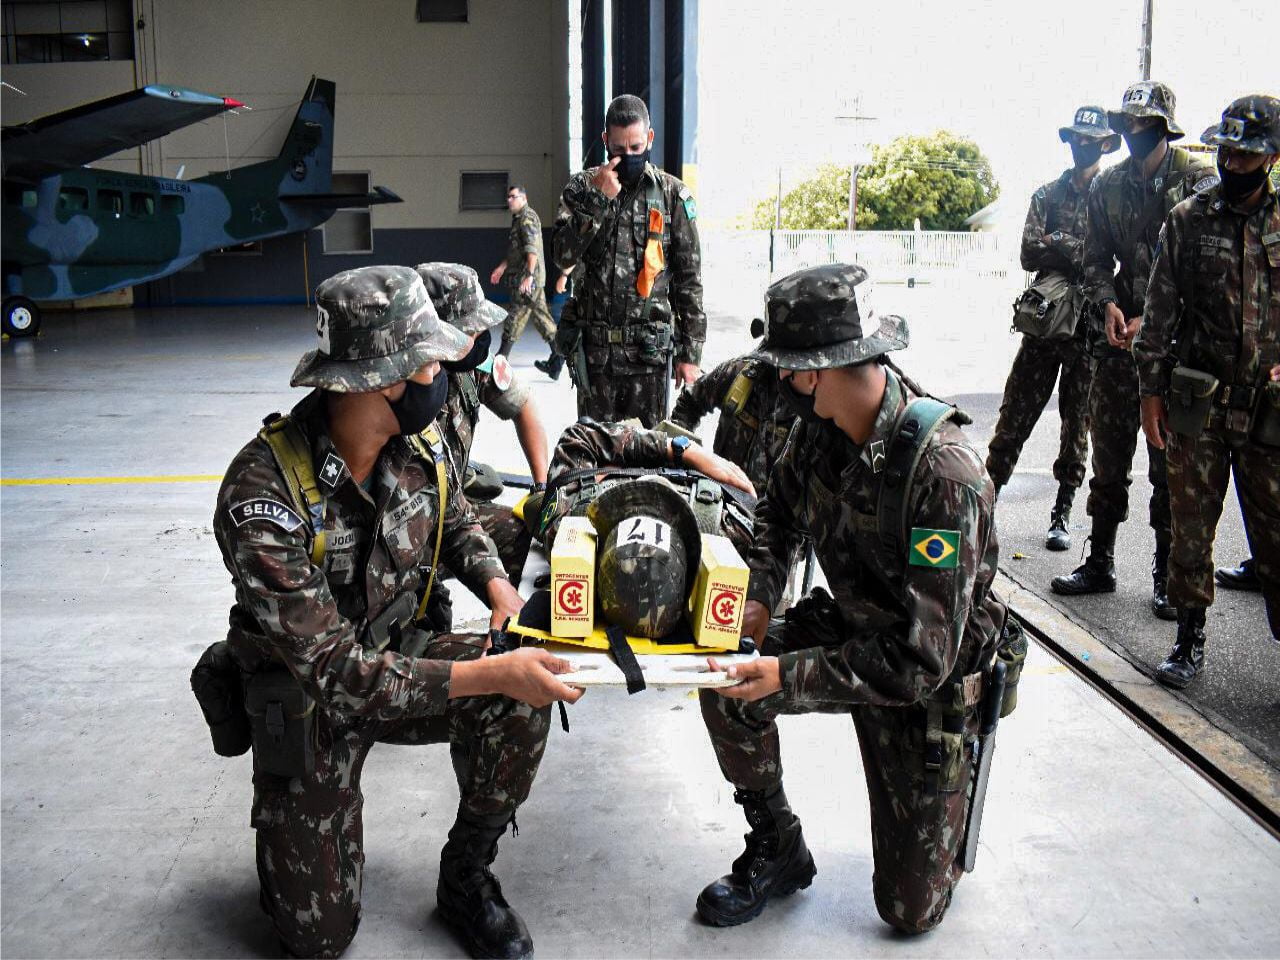 Exército Realiza Estágio De Atendimento De Saúde Em Operações Militares 8436